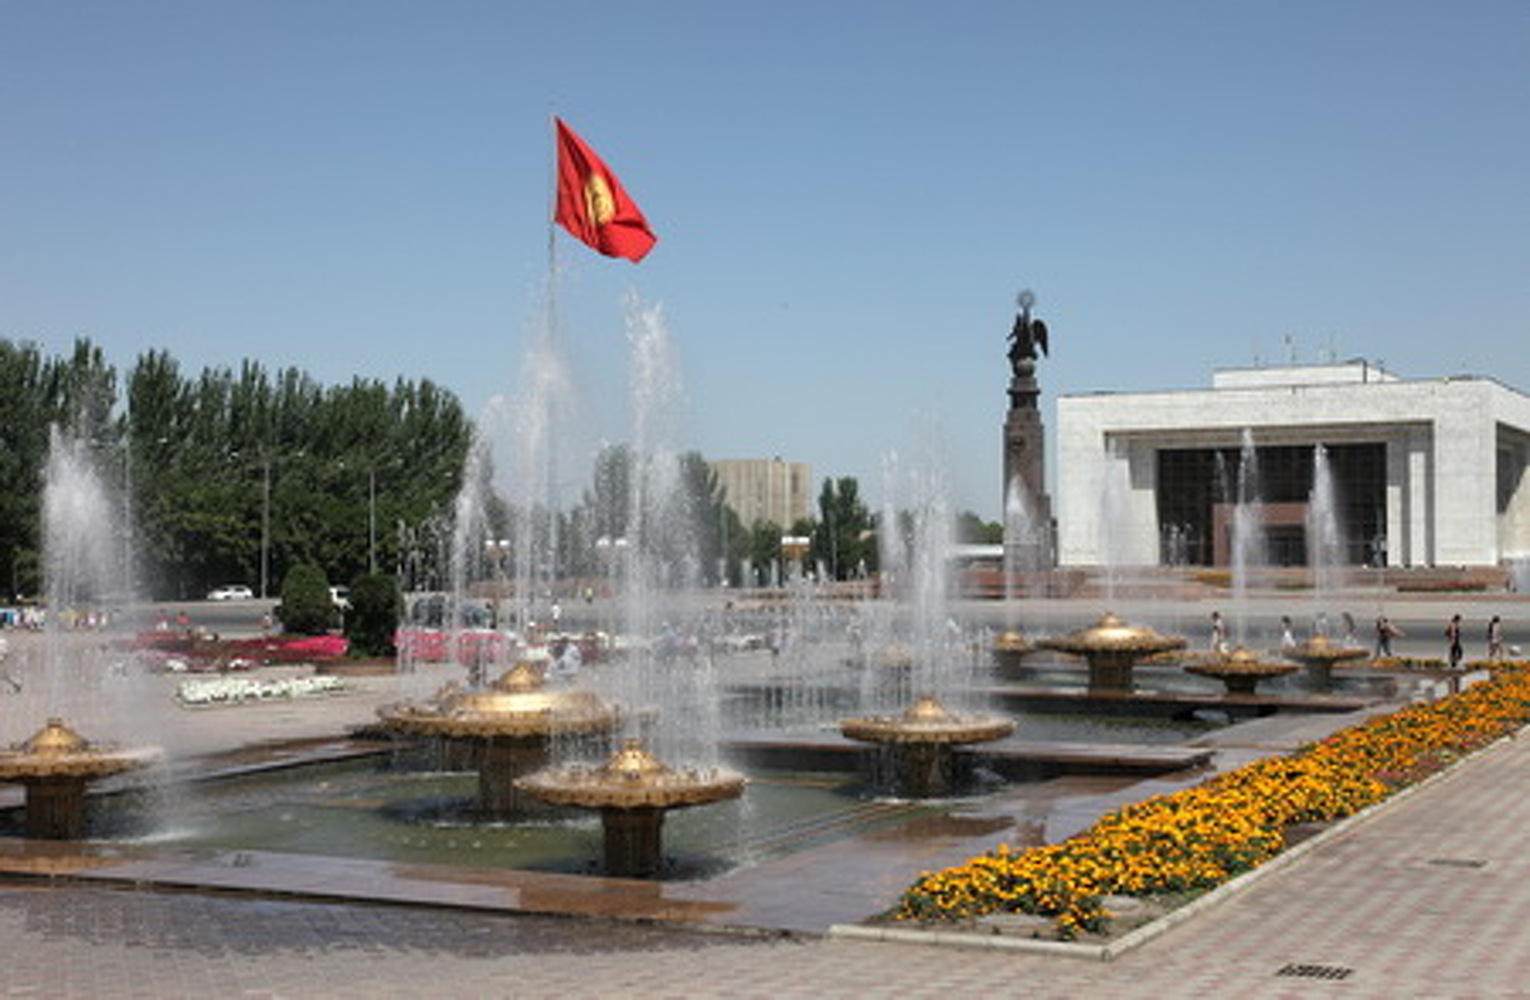 Жара до 34 градусов — погода в Бишкеке 30 мая — Today.kg